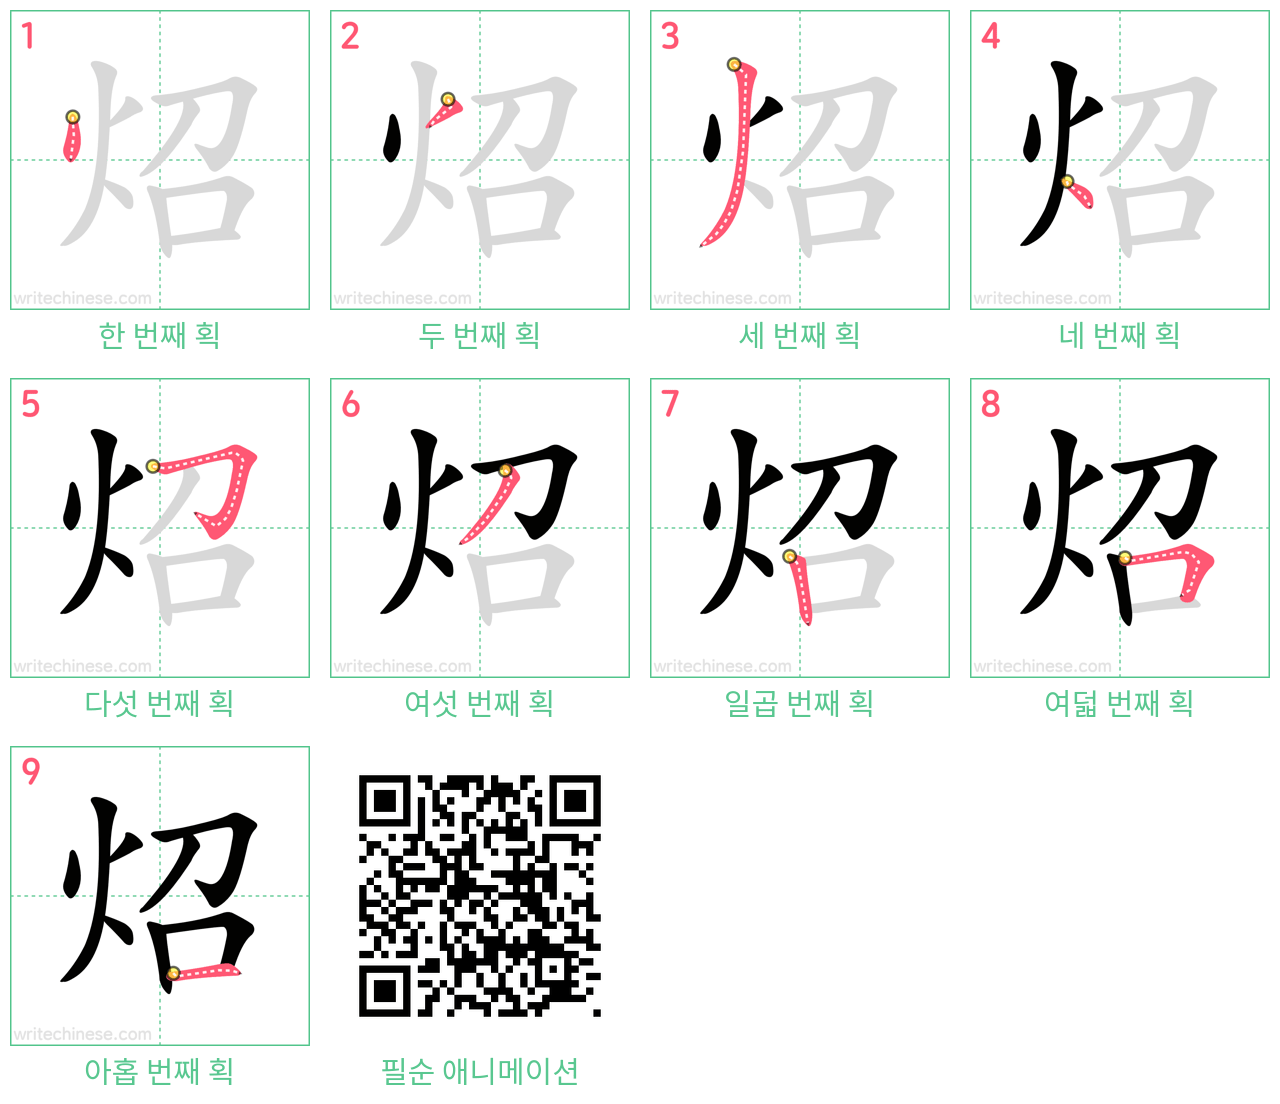 炤 step-by-step stroke order diagrams